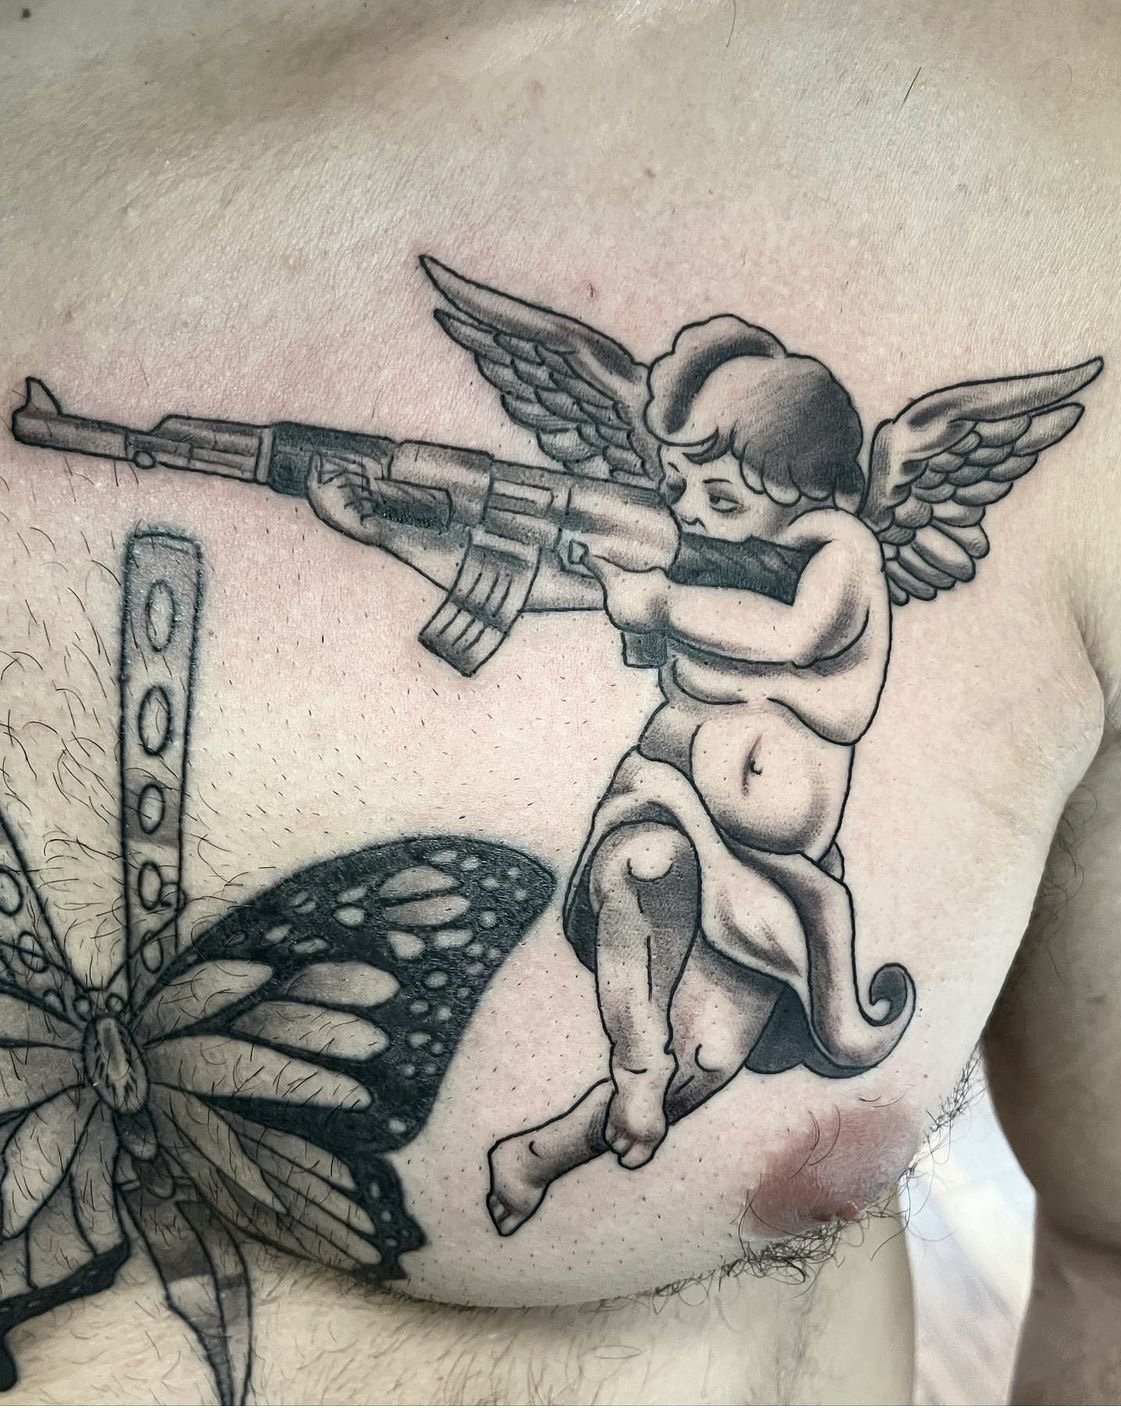 Four little angels   Martin Švec  Hand  Gun tattoo  Facebook